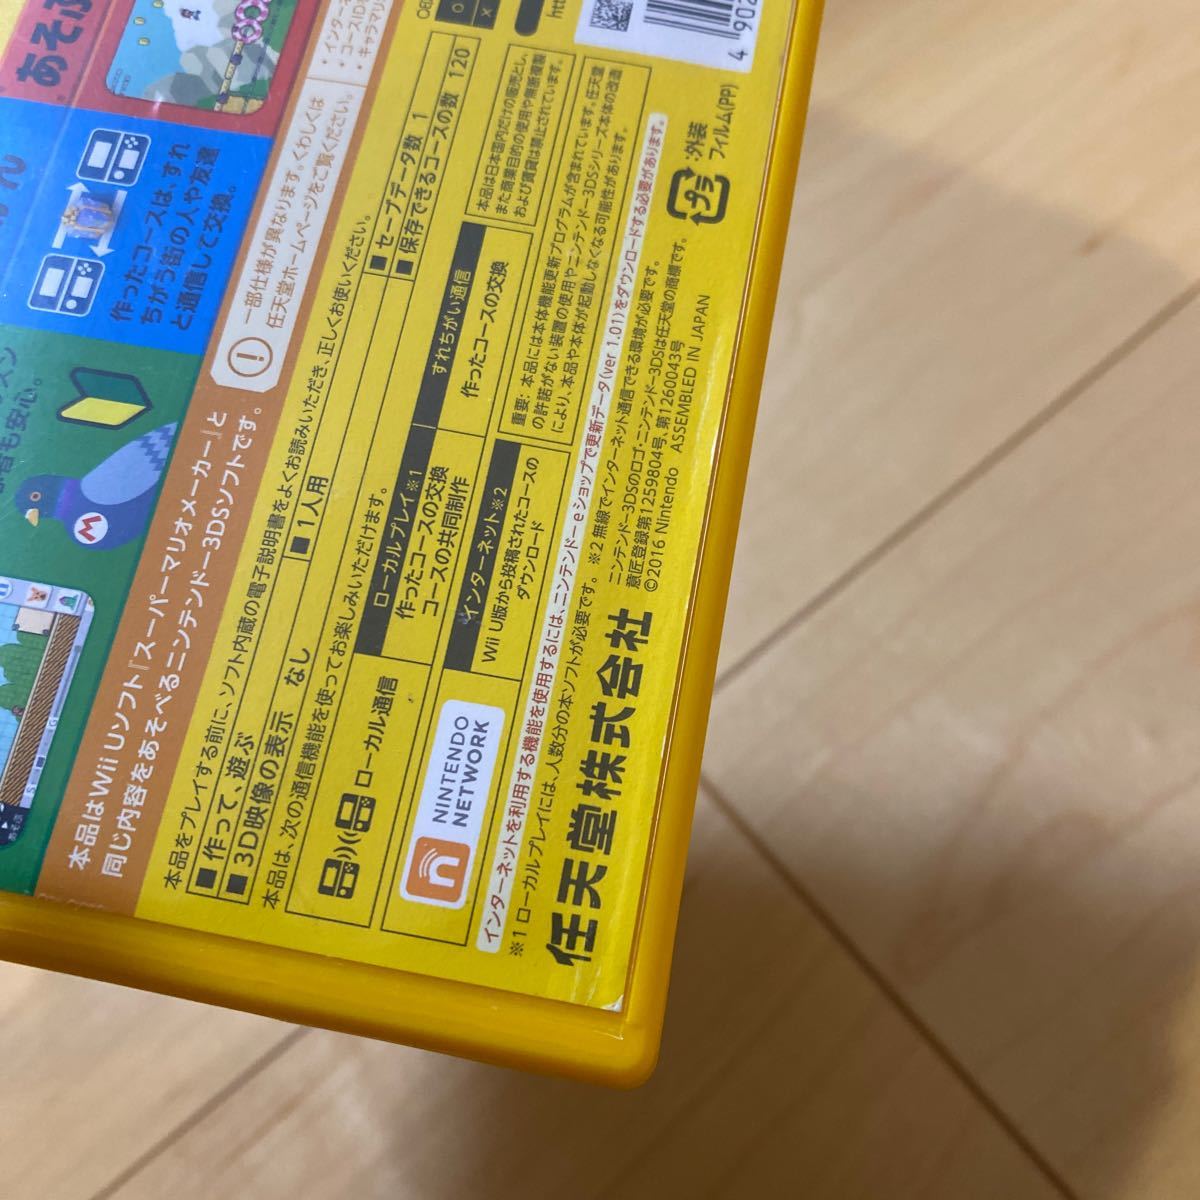 【3DS】 スーパーマリオメーカー for ニンテンドー3DS